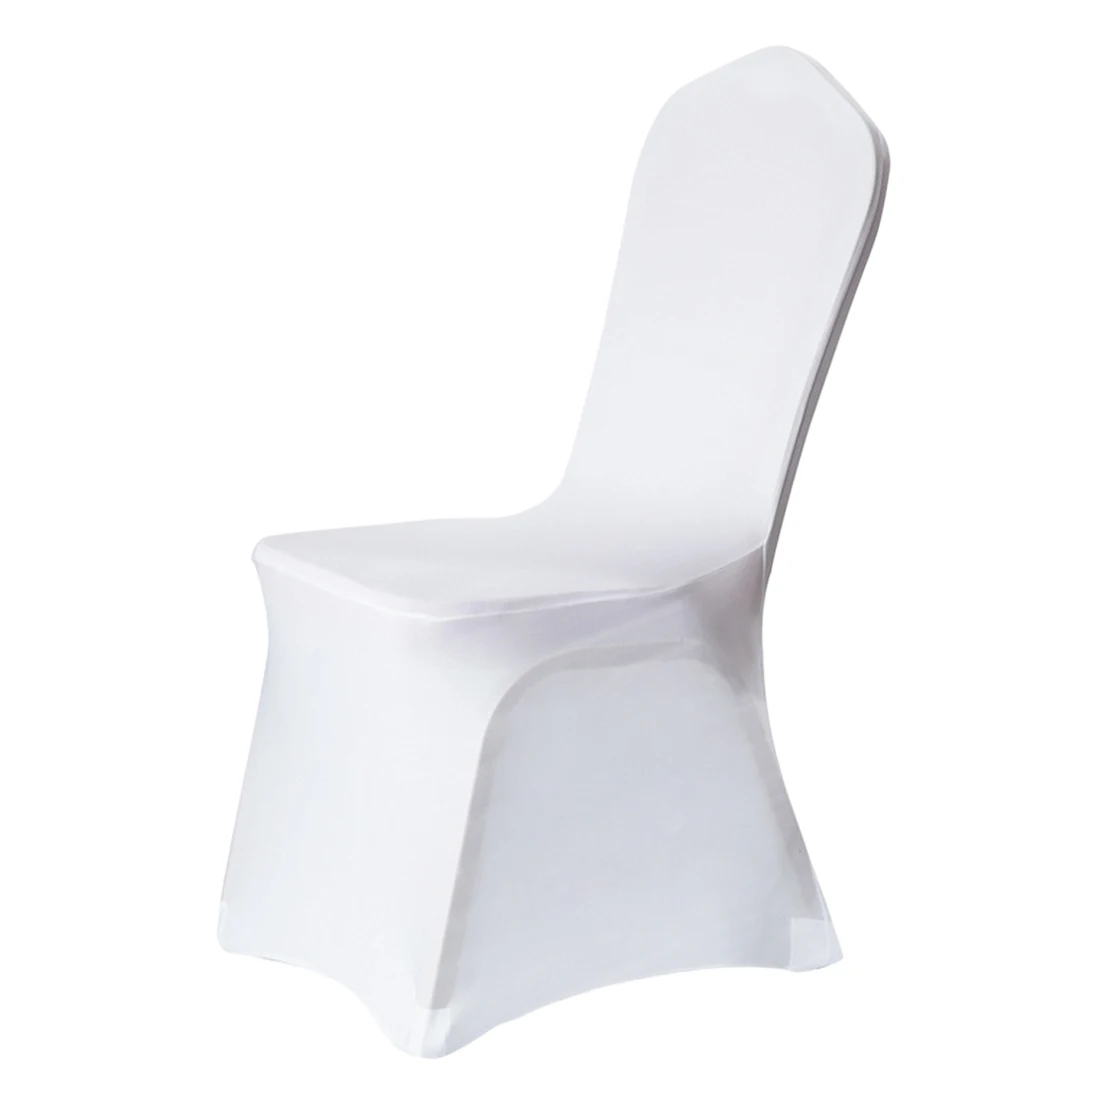 Чехлы на стулья тканевые Свадебные белые чехлы на стулья Reataurant банкет Отель Обеденный вечерние лайкра полиэстер спандекс открытый - Цвет: Белый